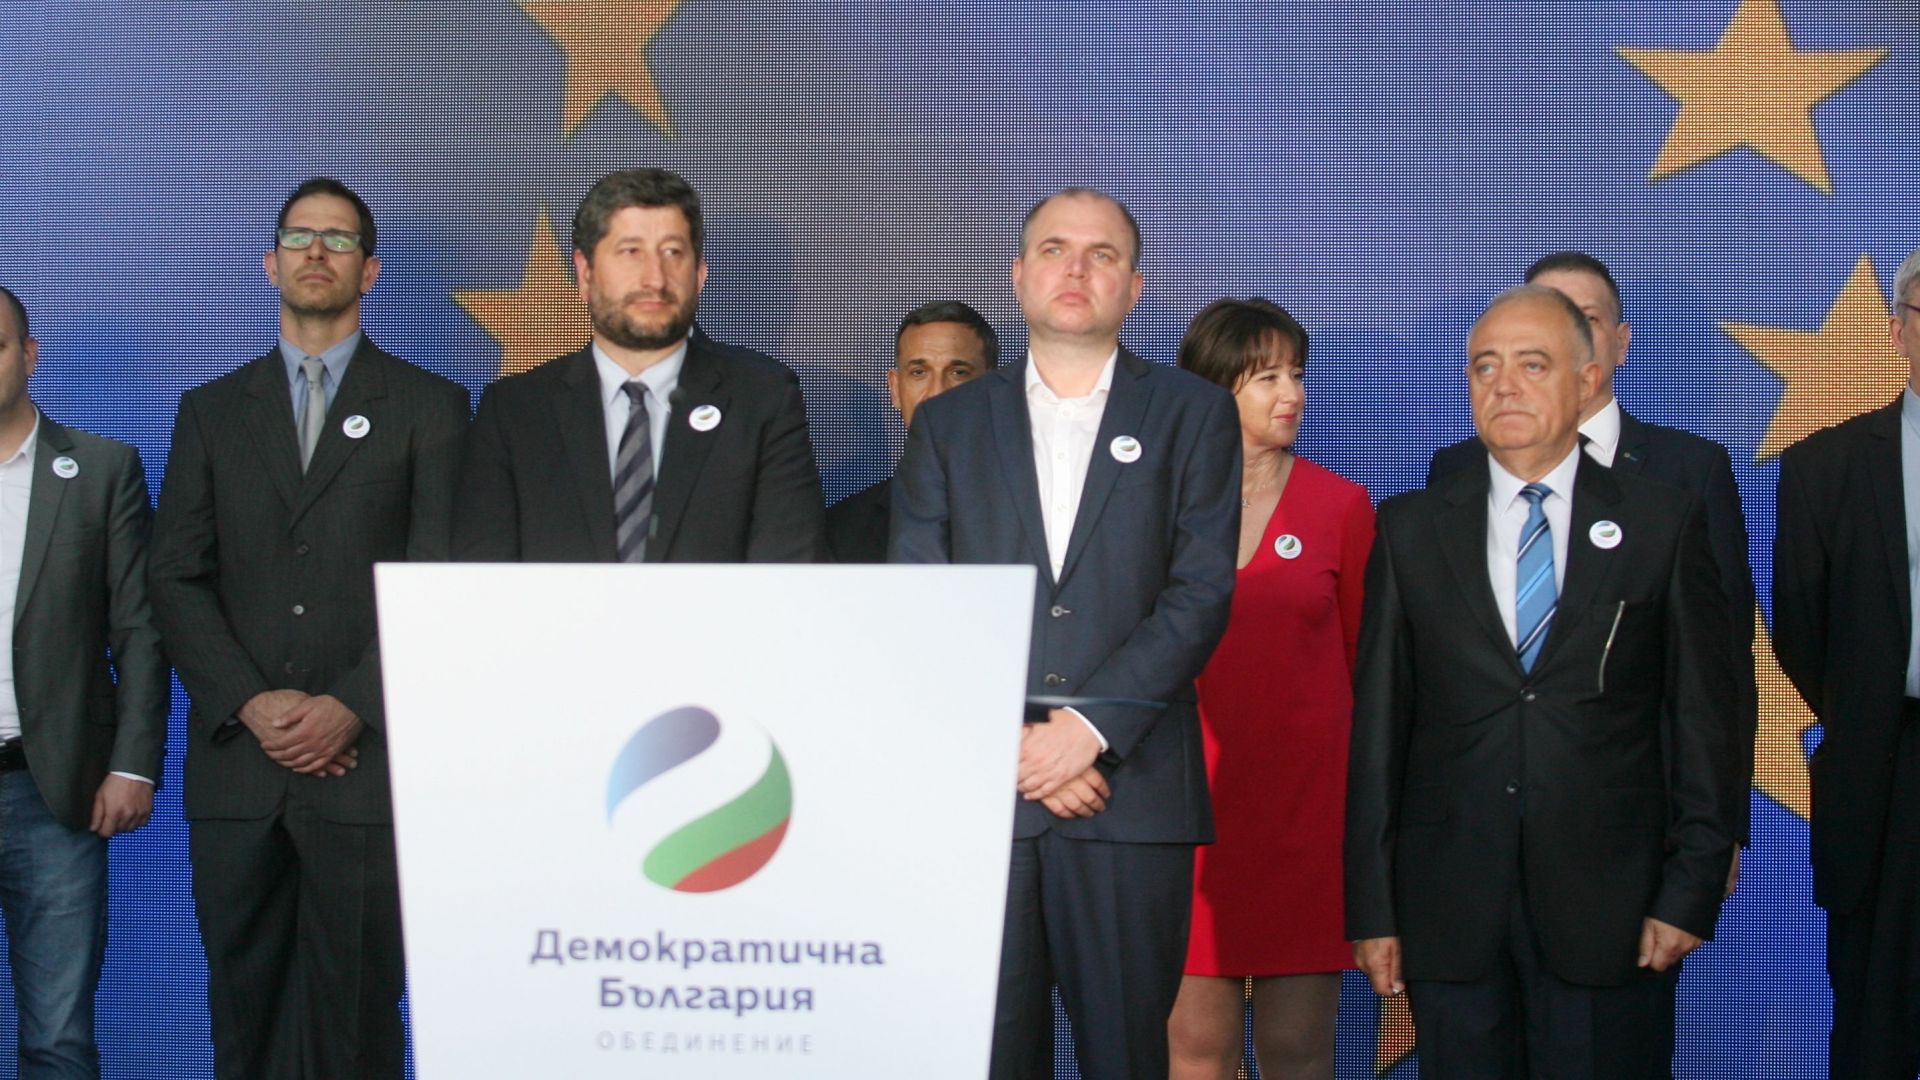 Партия "Зелените" от "Демократична България" ще трябва да си смени името